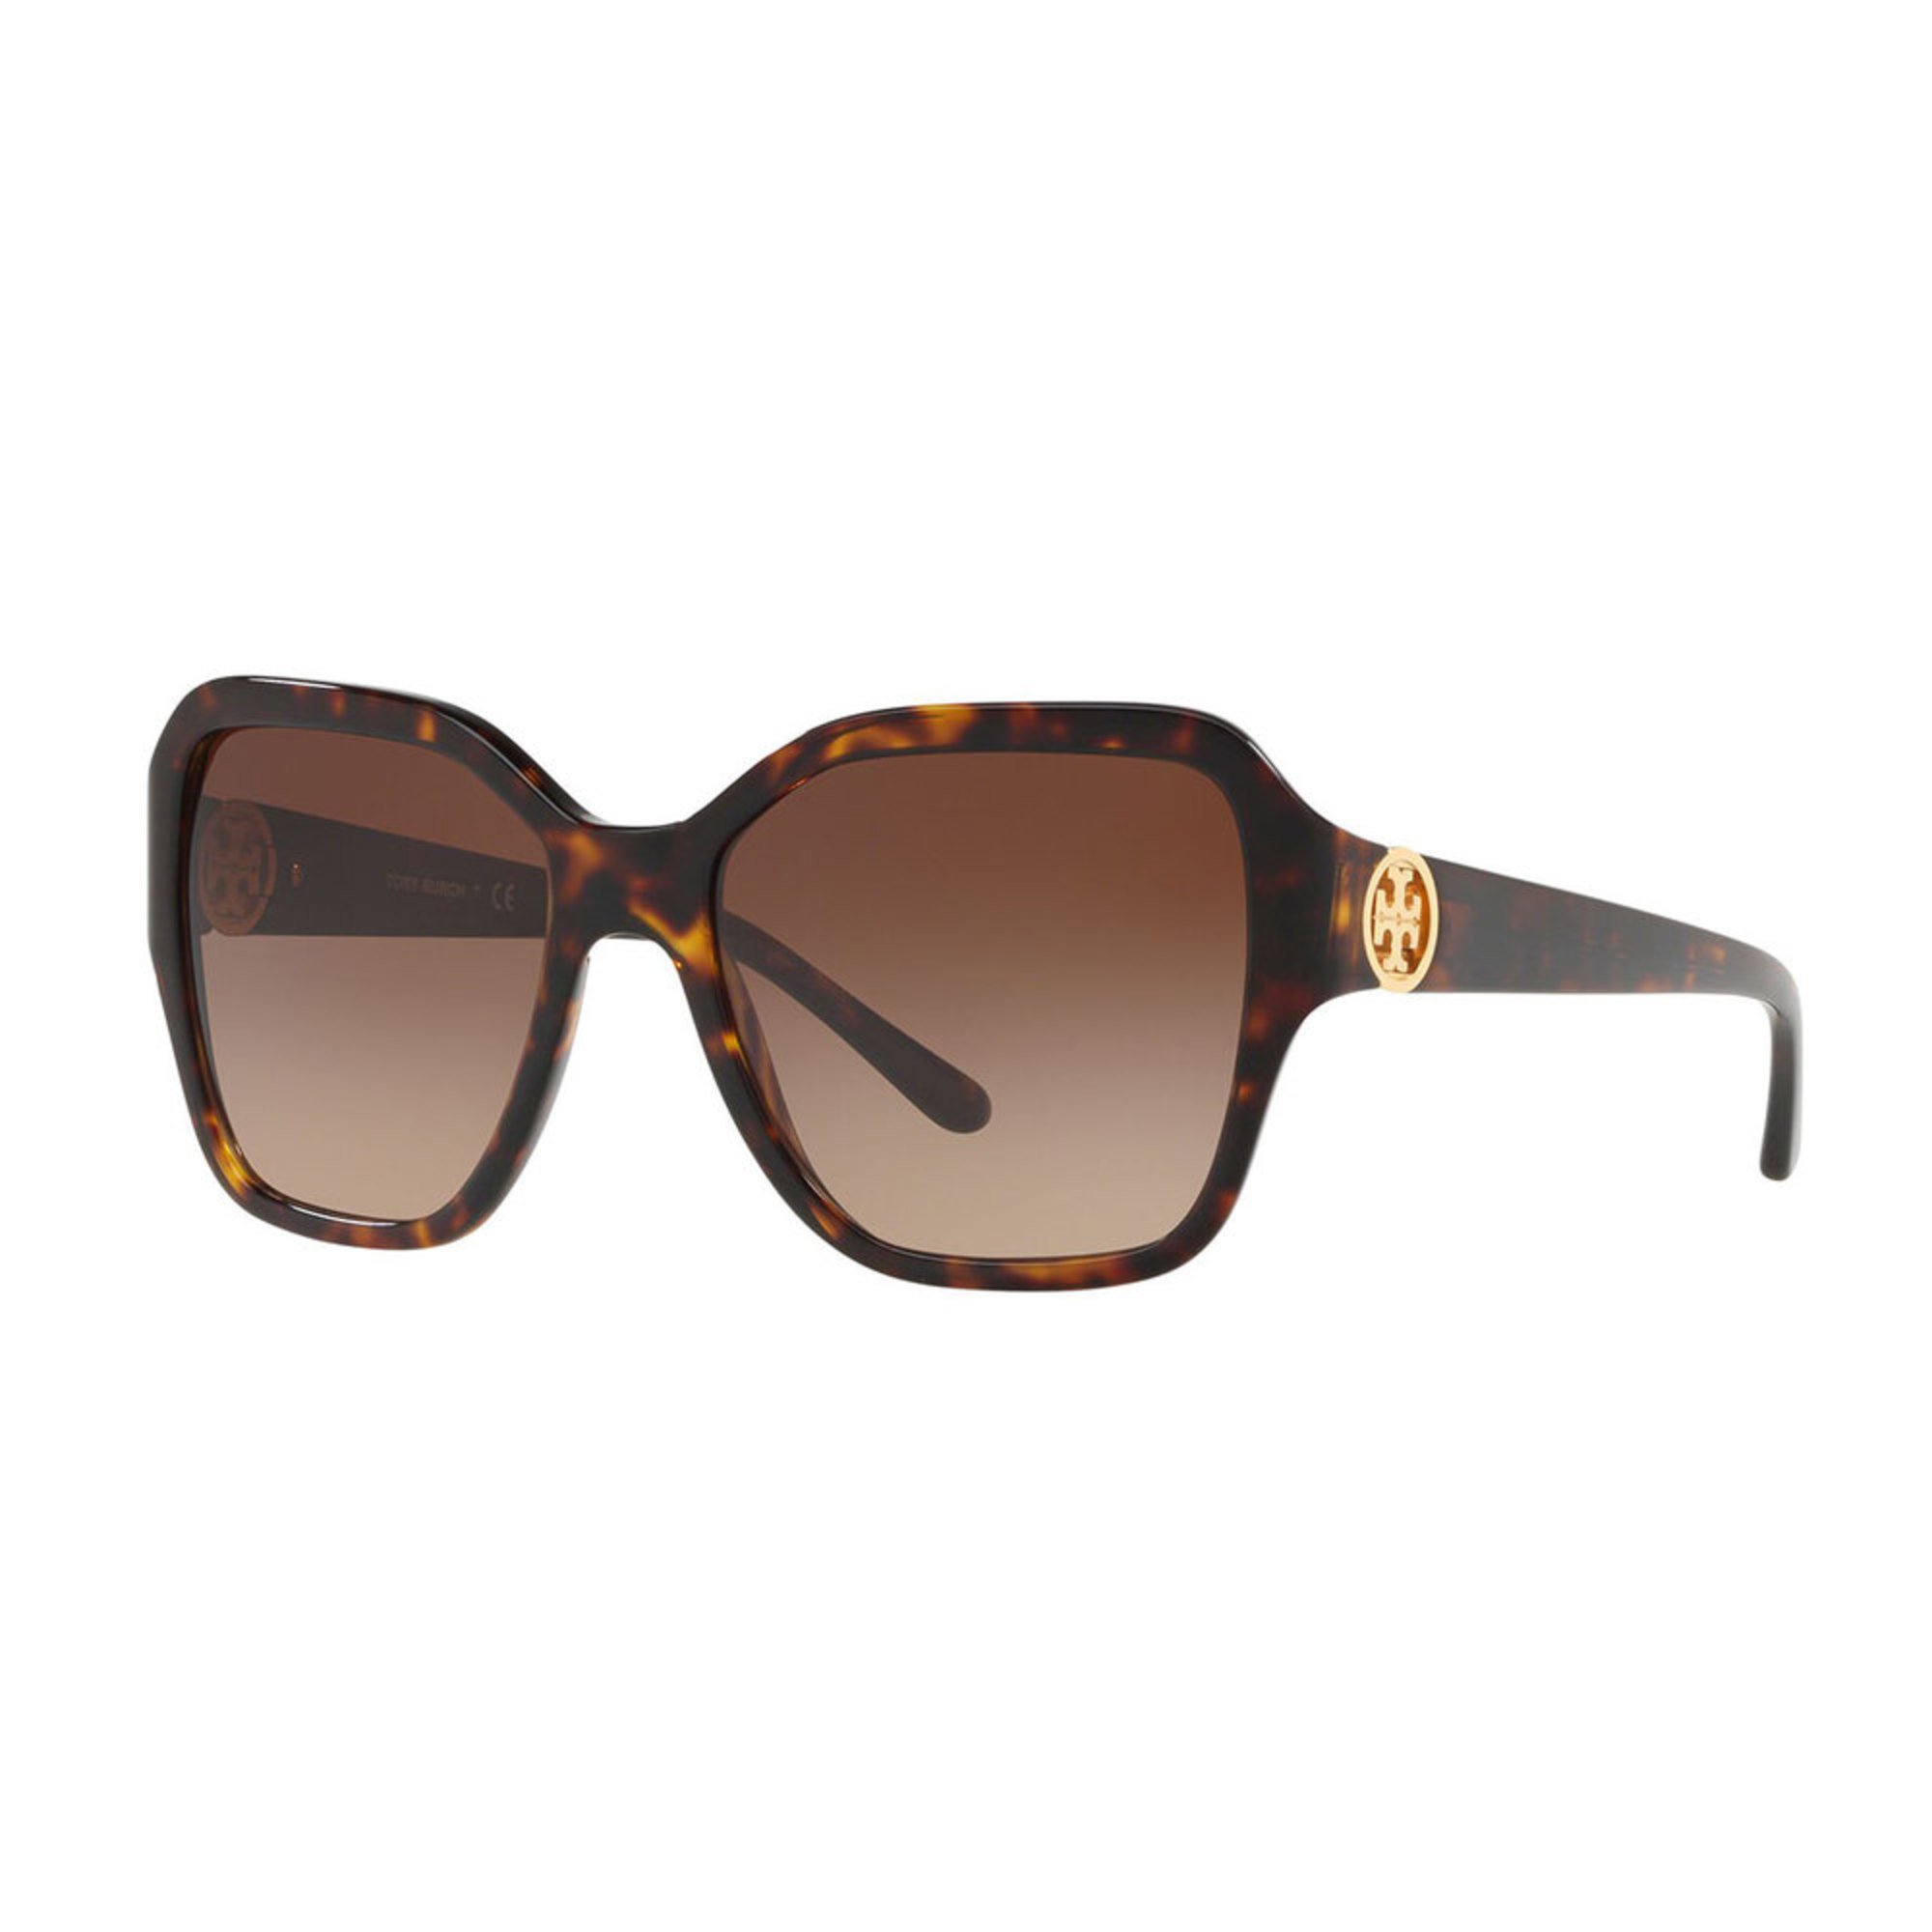 Tory Burch Women's Square Dark Tortoise Sunglasses 56mm | Women's ...